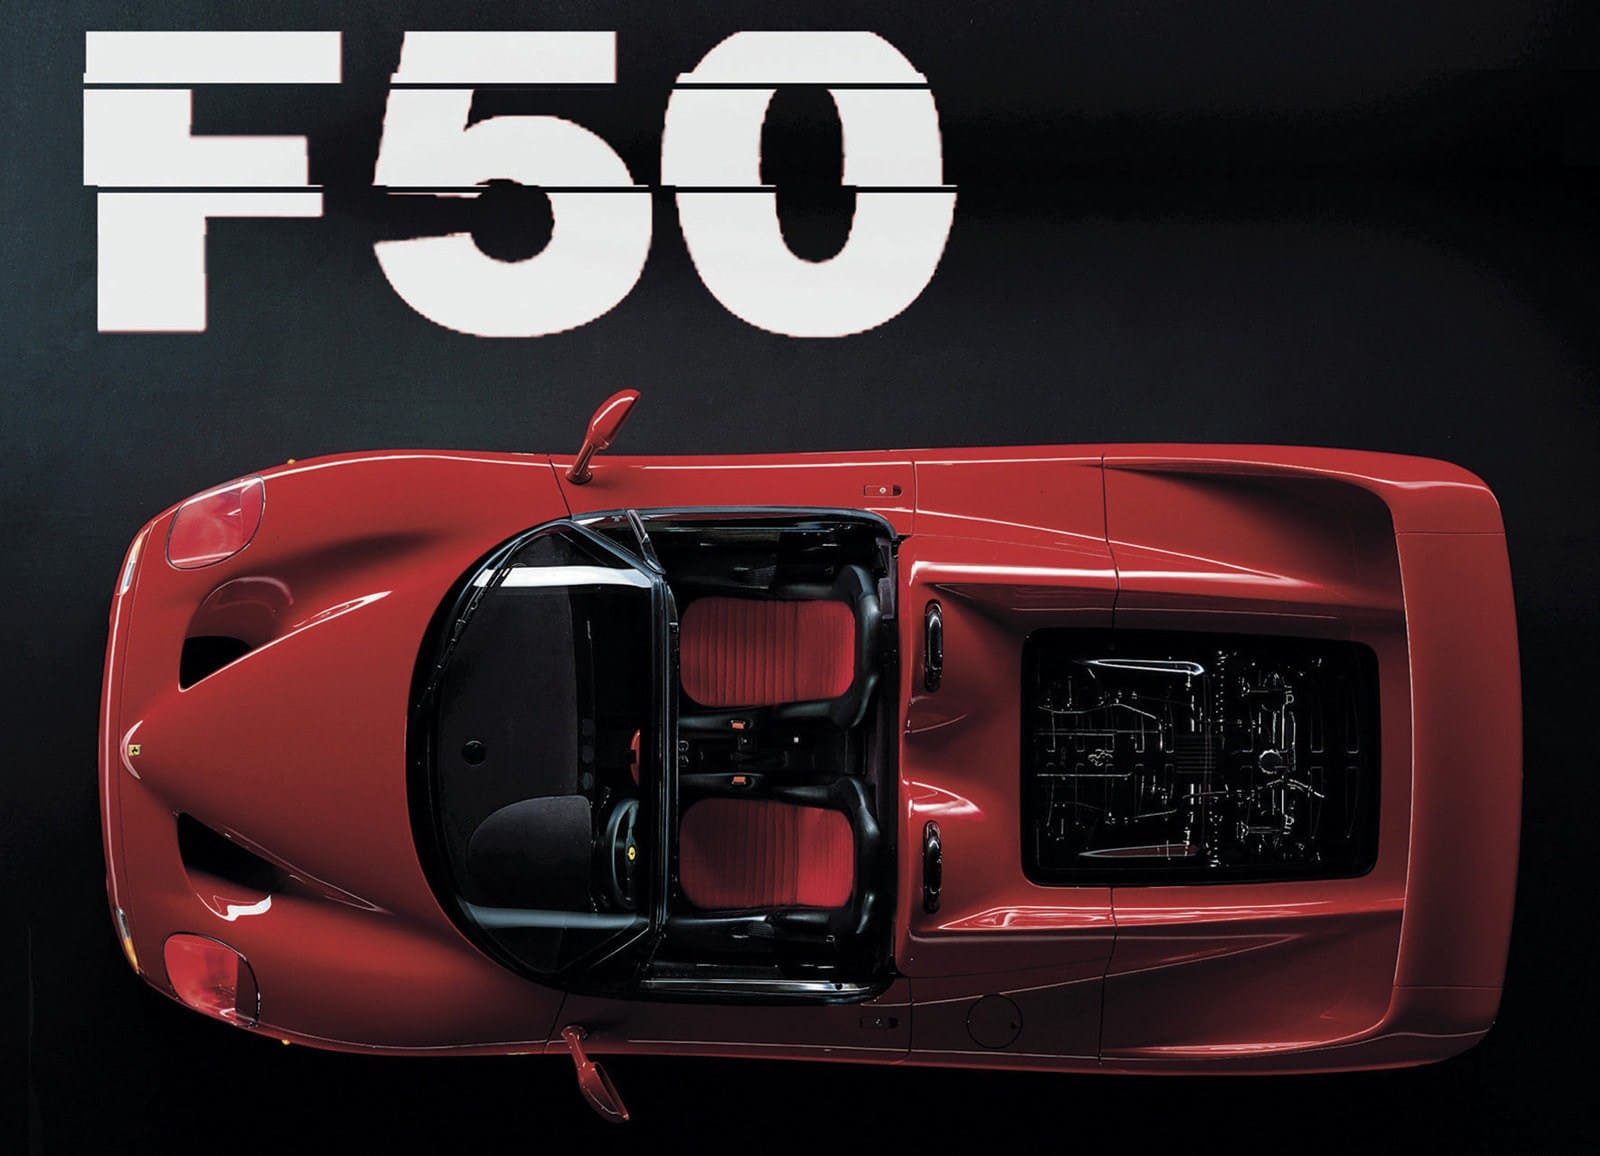 Moteur de F1 - Ferrari F50